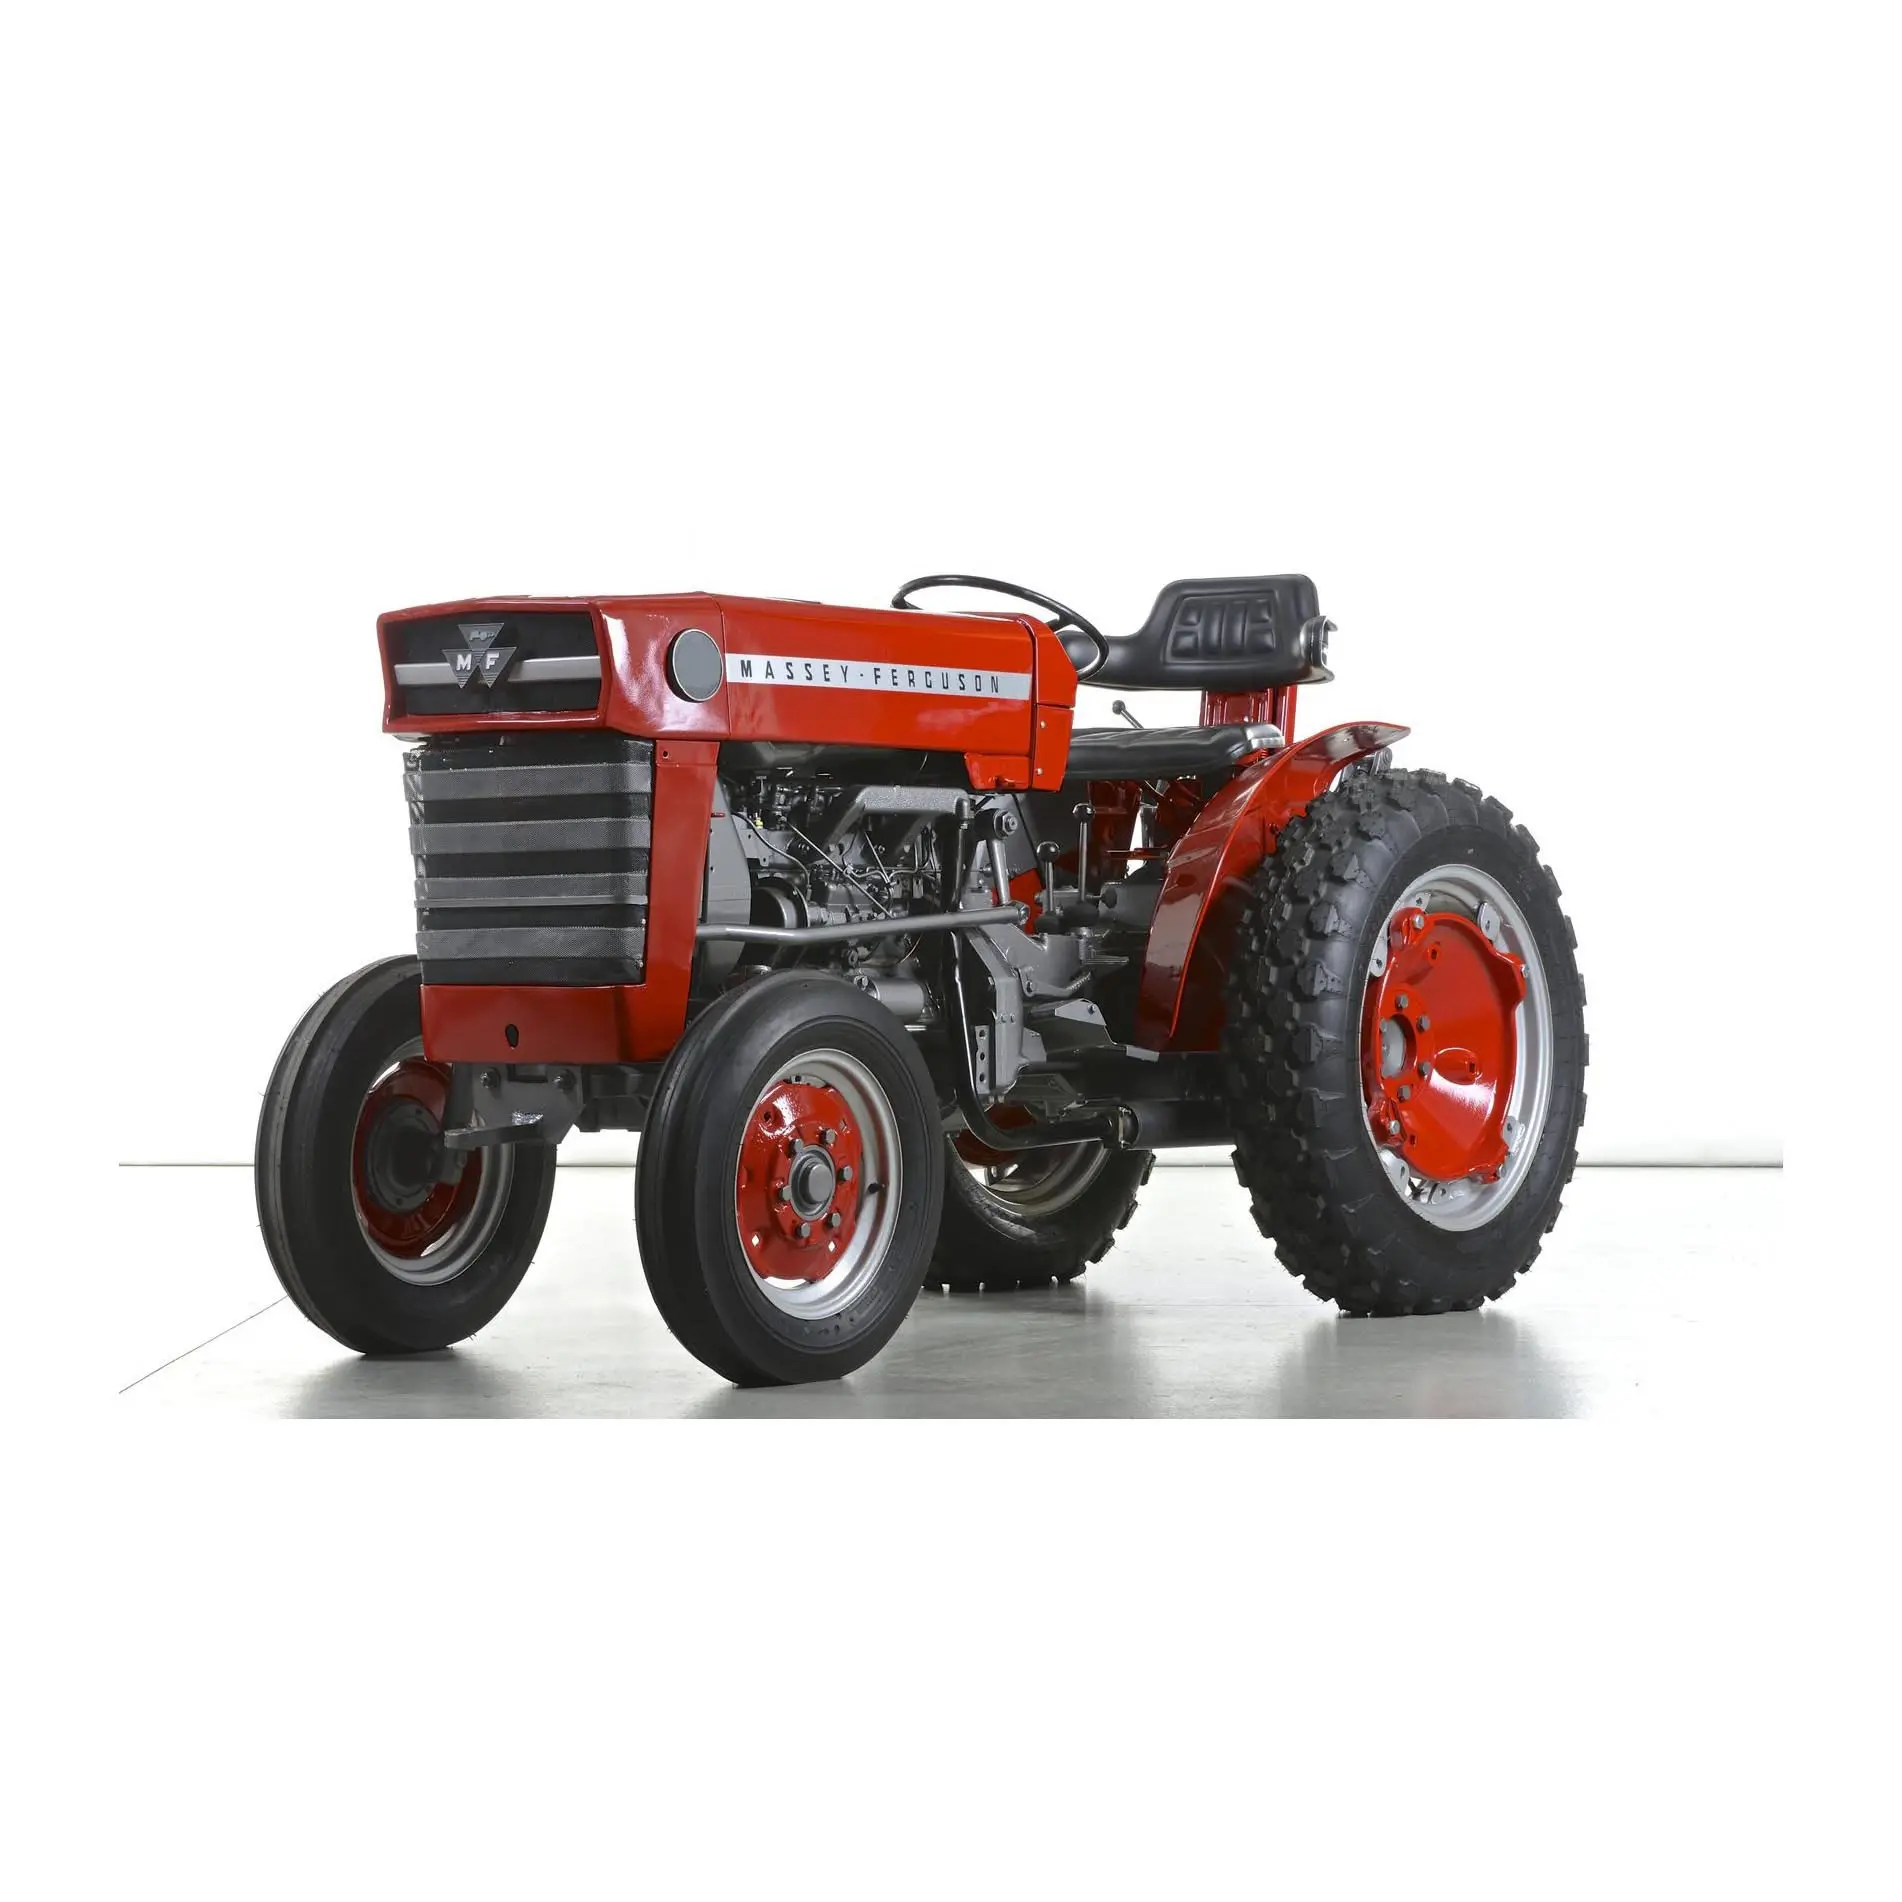 Trattori agricoli Mf trattore 4wd 290 massey ferguson usato a basso prezzo